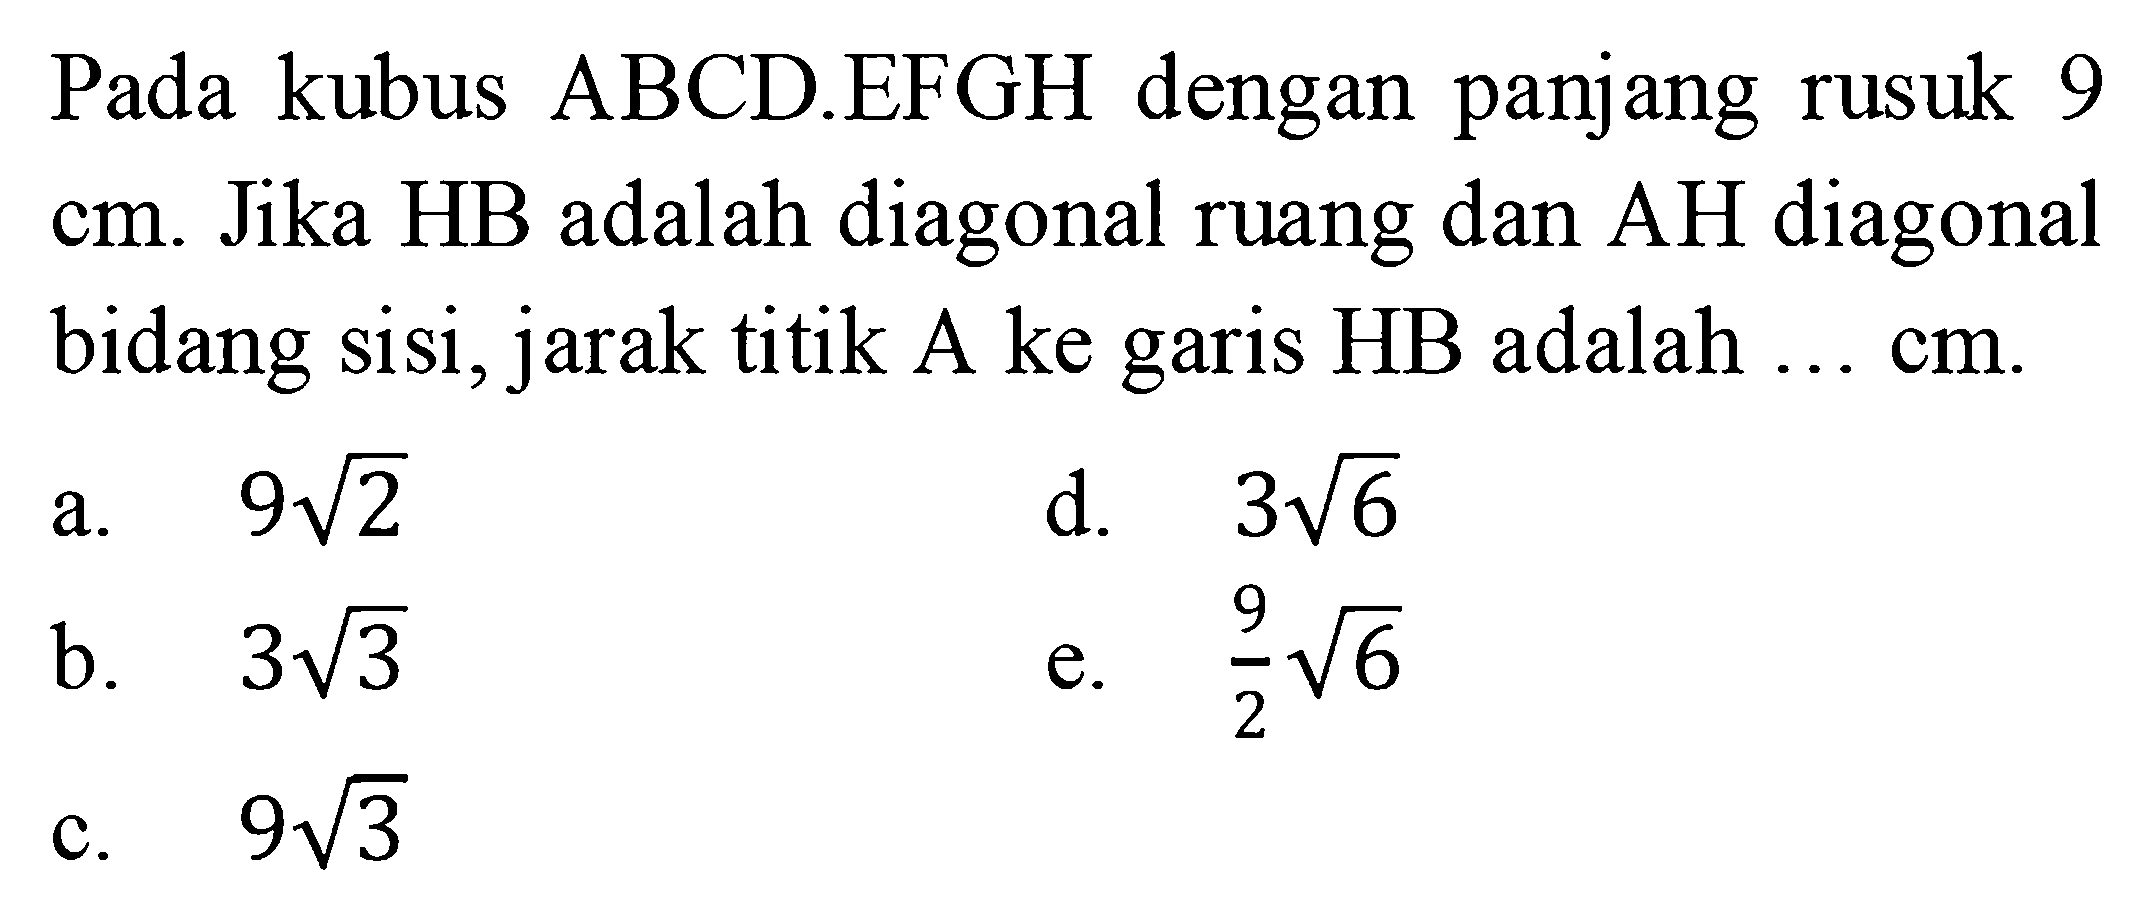 Pada kubus ABCDEFGH dengan panjang rusuk 9 cm. Jika HB adalah diagonal ruang dan AH diagonal bidang sisi, jarak titik A ke garis HB adalah ... cm.